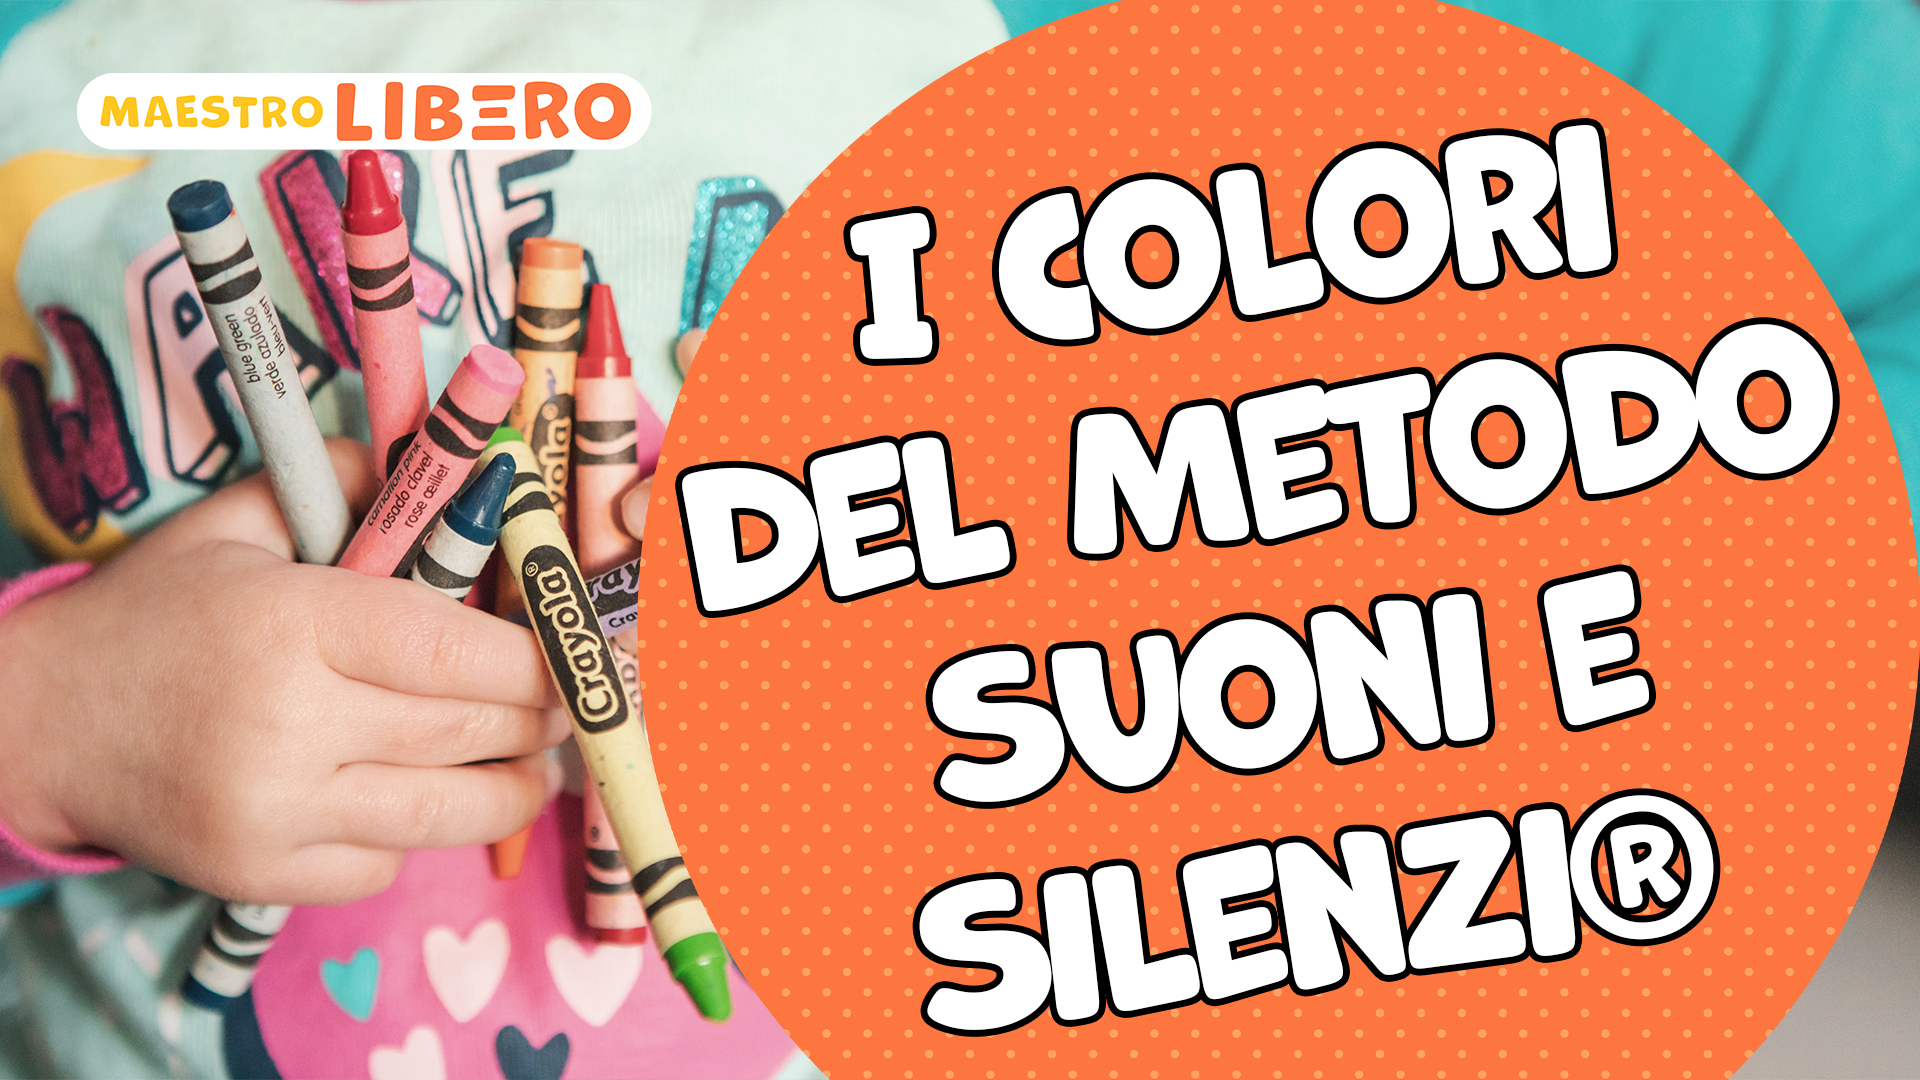 Maestro Libero & Metodo Suoni e Silenzi®: il libro di musica per bambini  più venduto in Italia! 